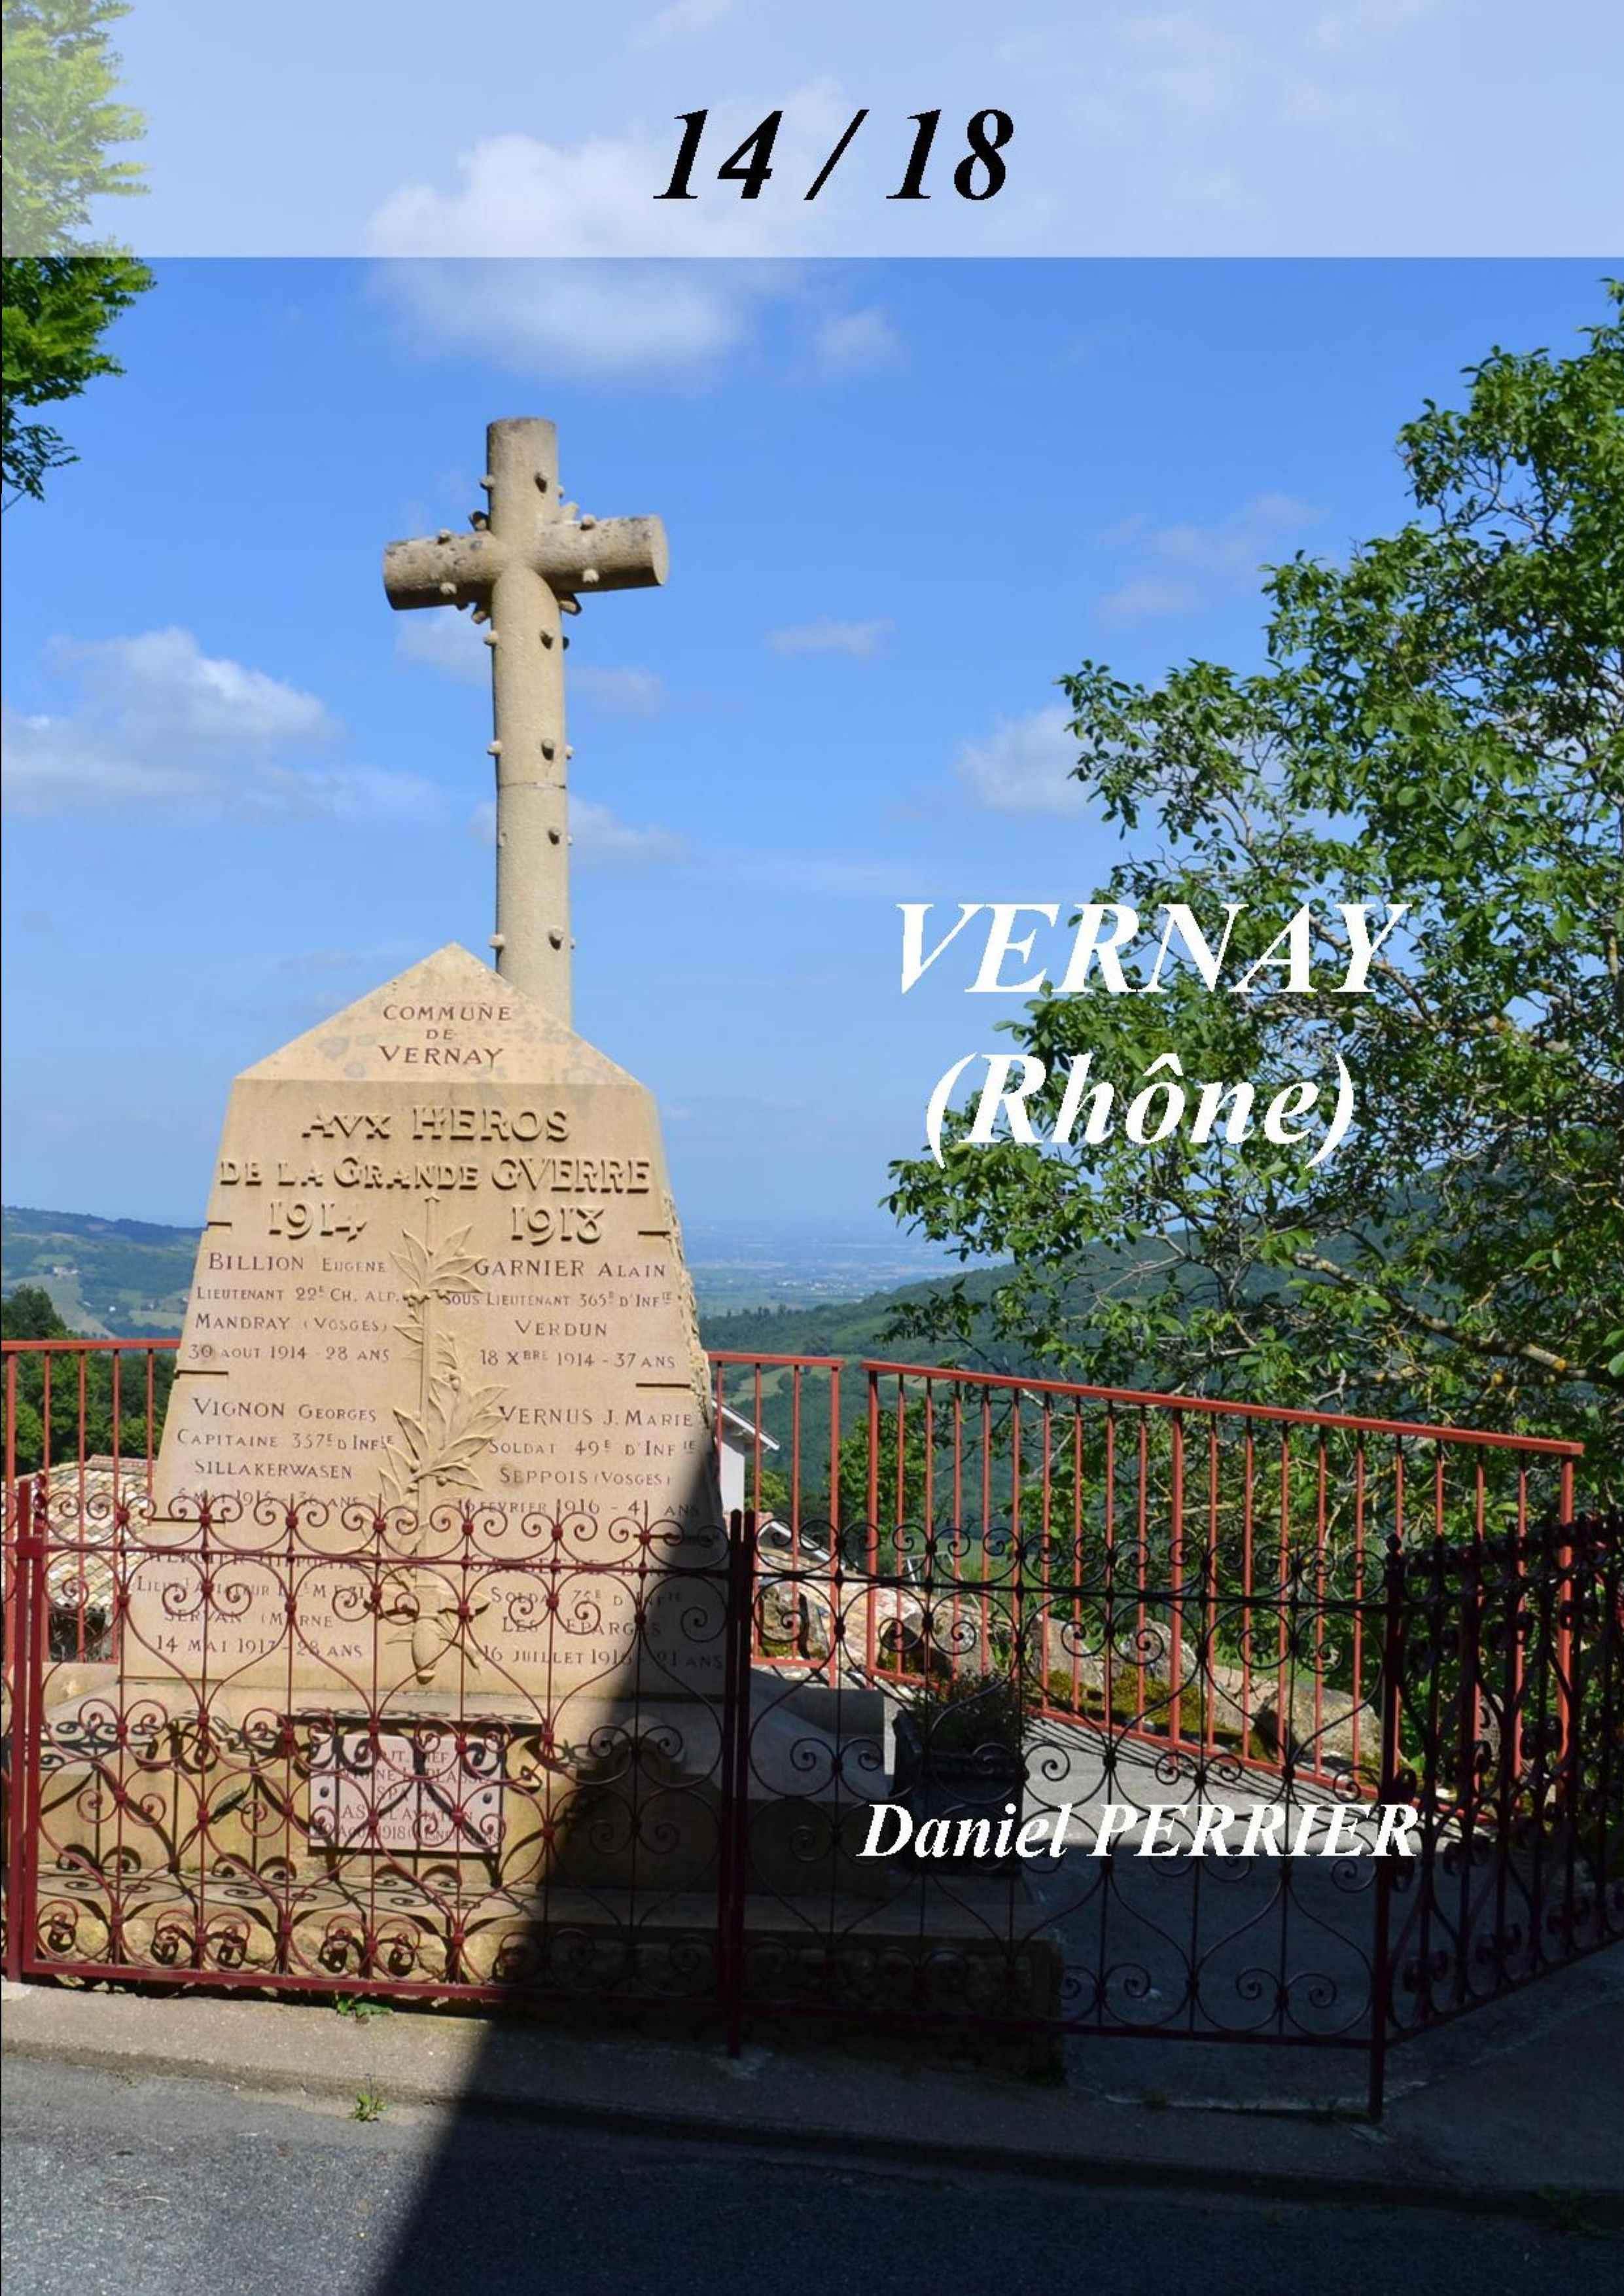 Le monument aux morte de Vernay